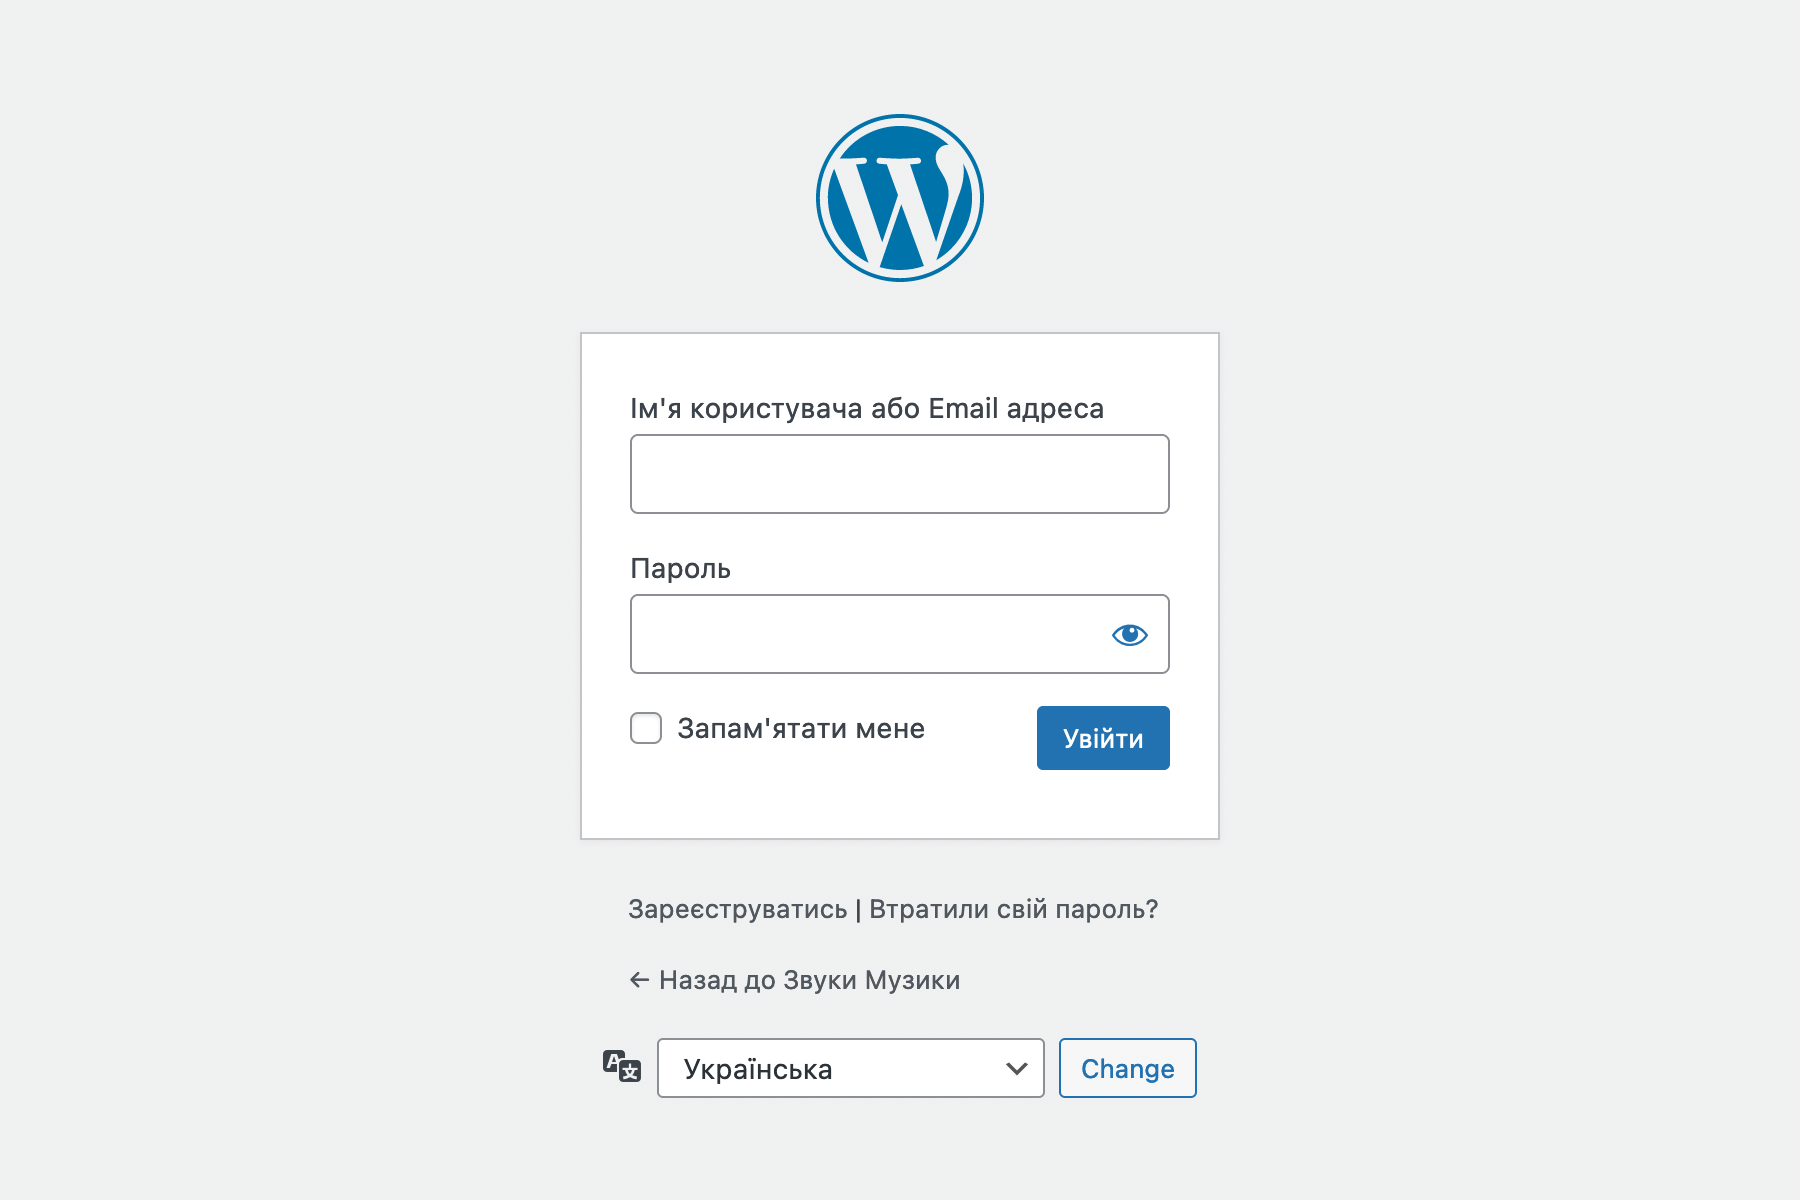 Сторінка входу в консоль WordPress, коли в опції «Членство» стоїть галочка